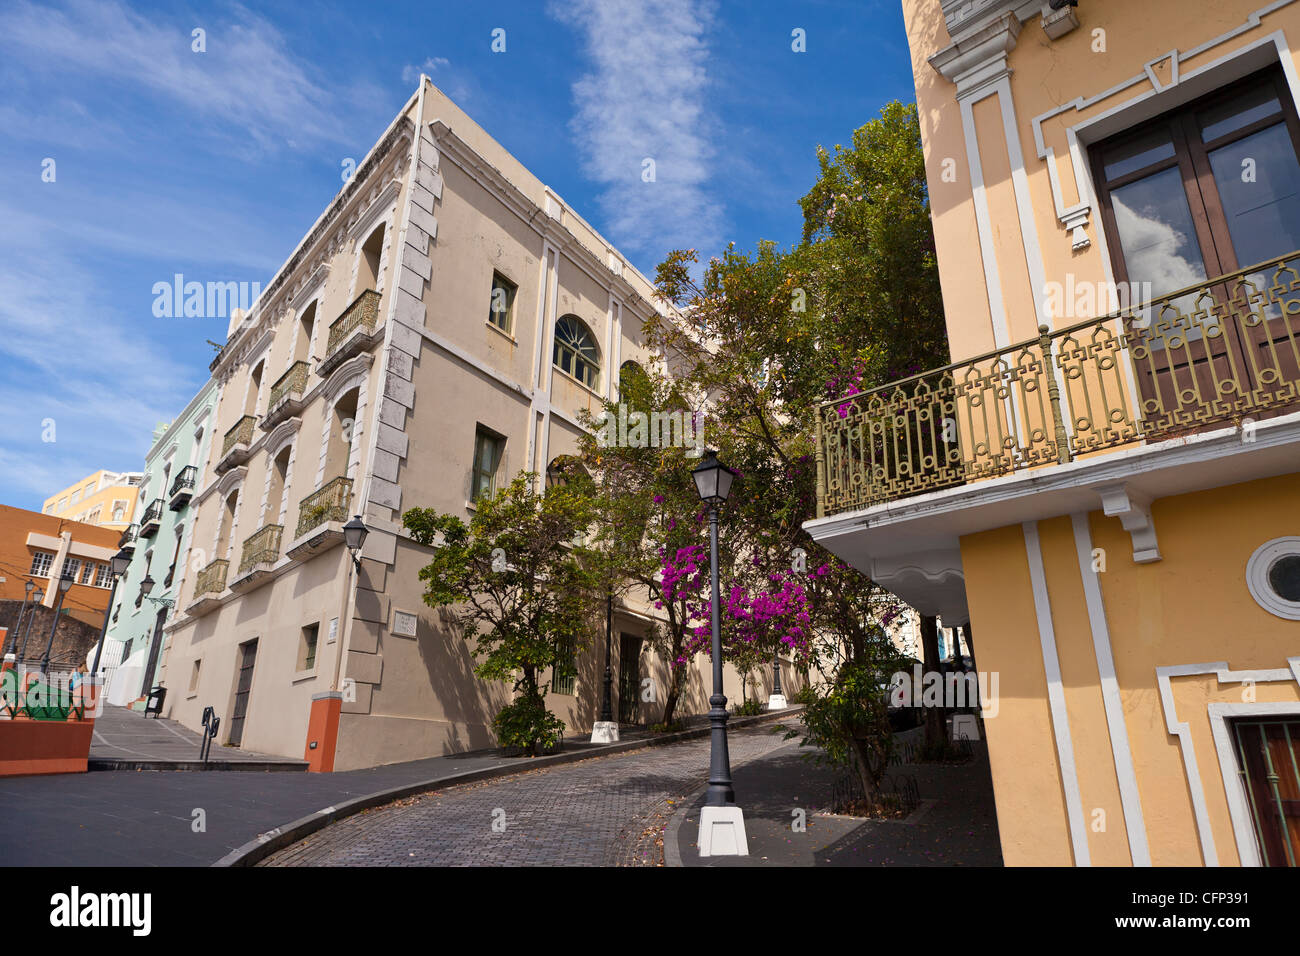 La vecchia San Juan, Puerto Rico - edifici storici e strada di ciottoli. Foto Stock